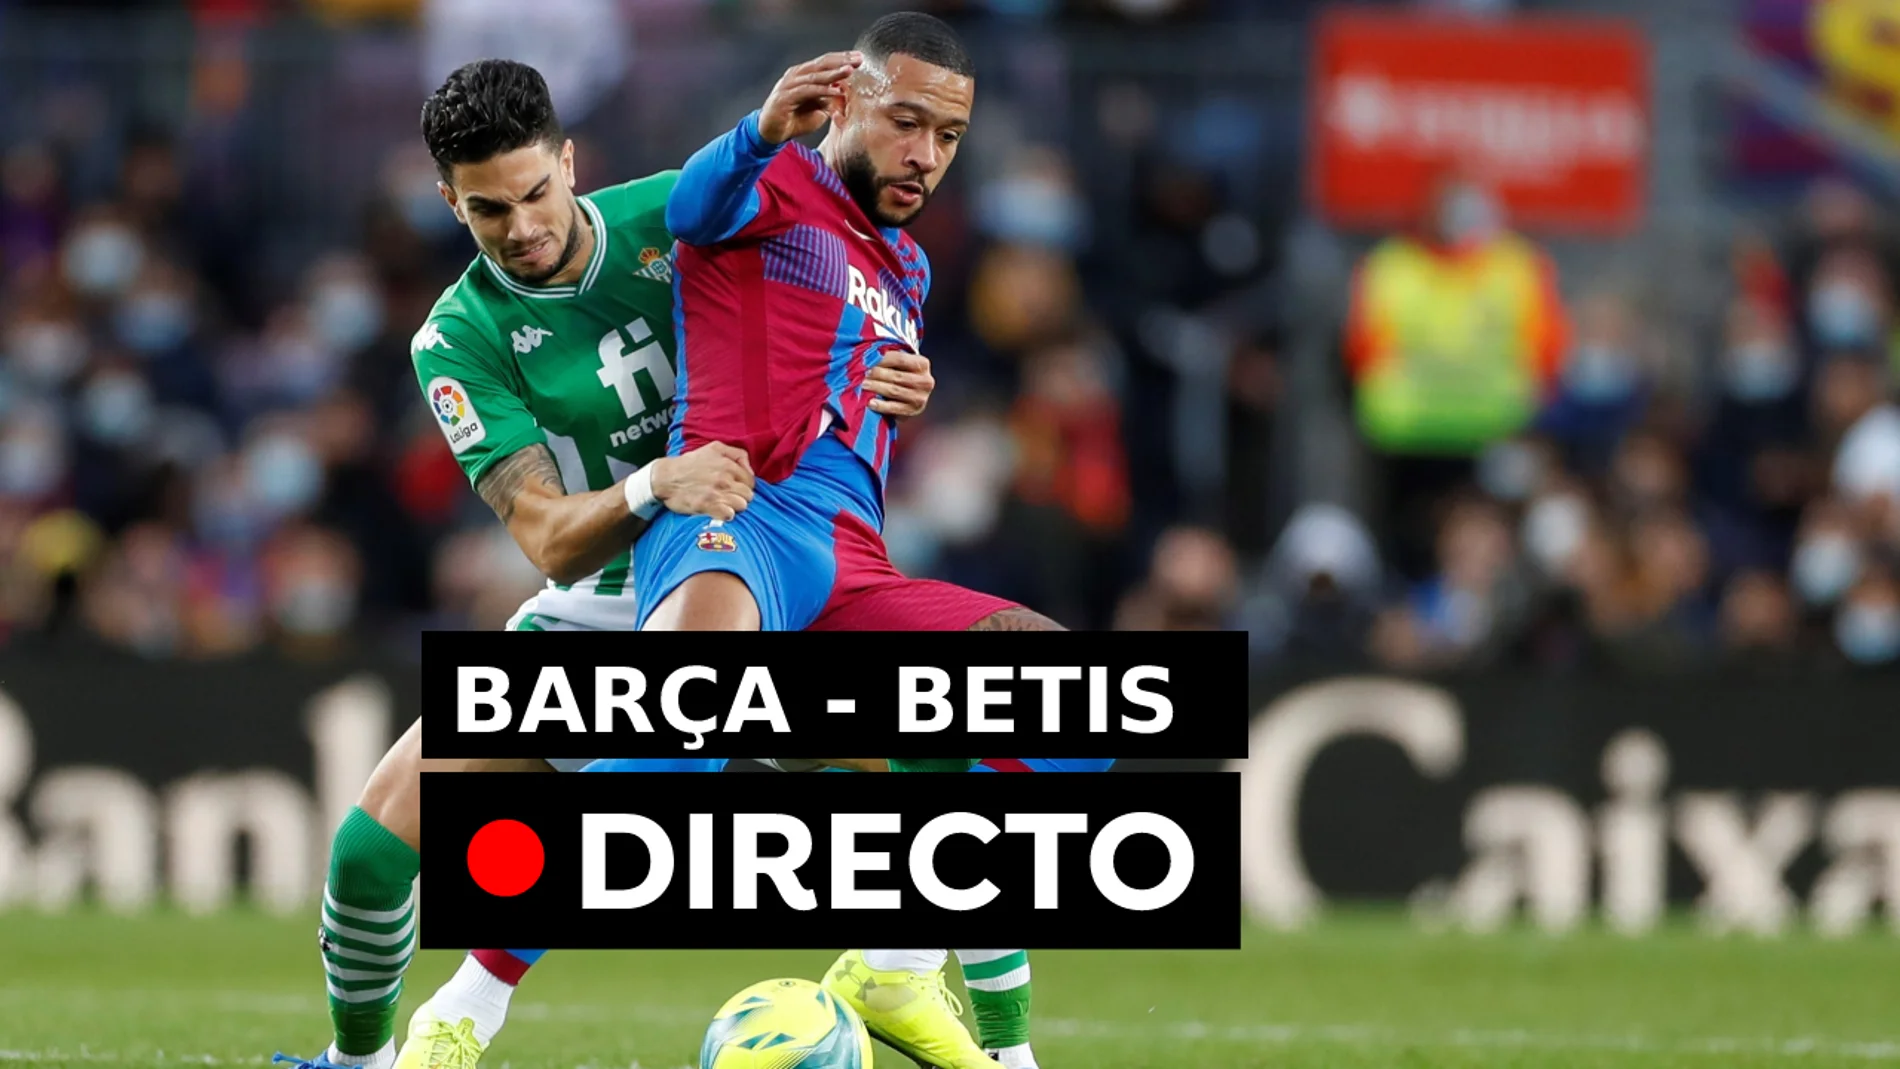 Barcelona - Betis en directo: Resultado y goles del partido de hoy 